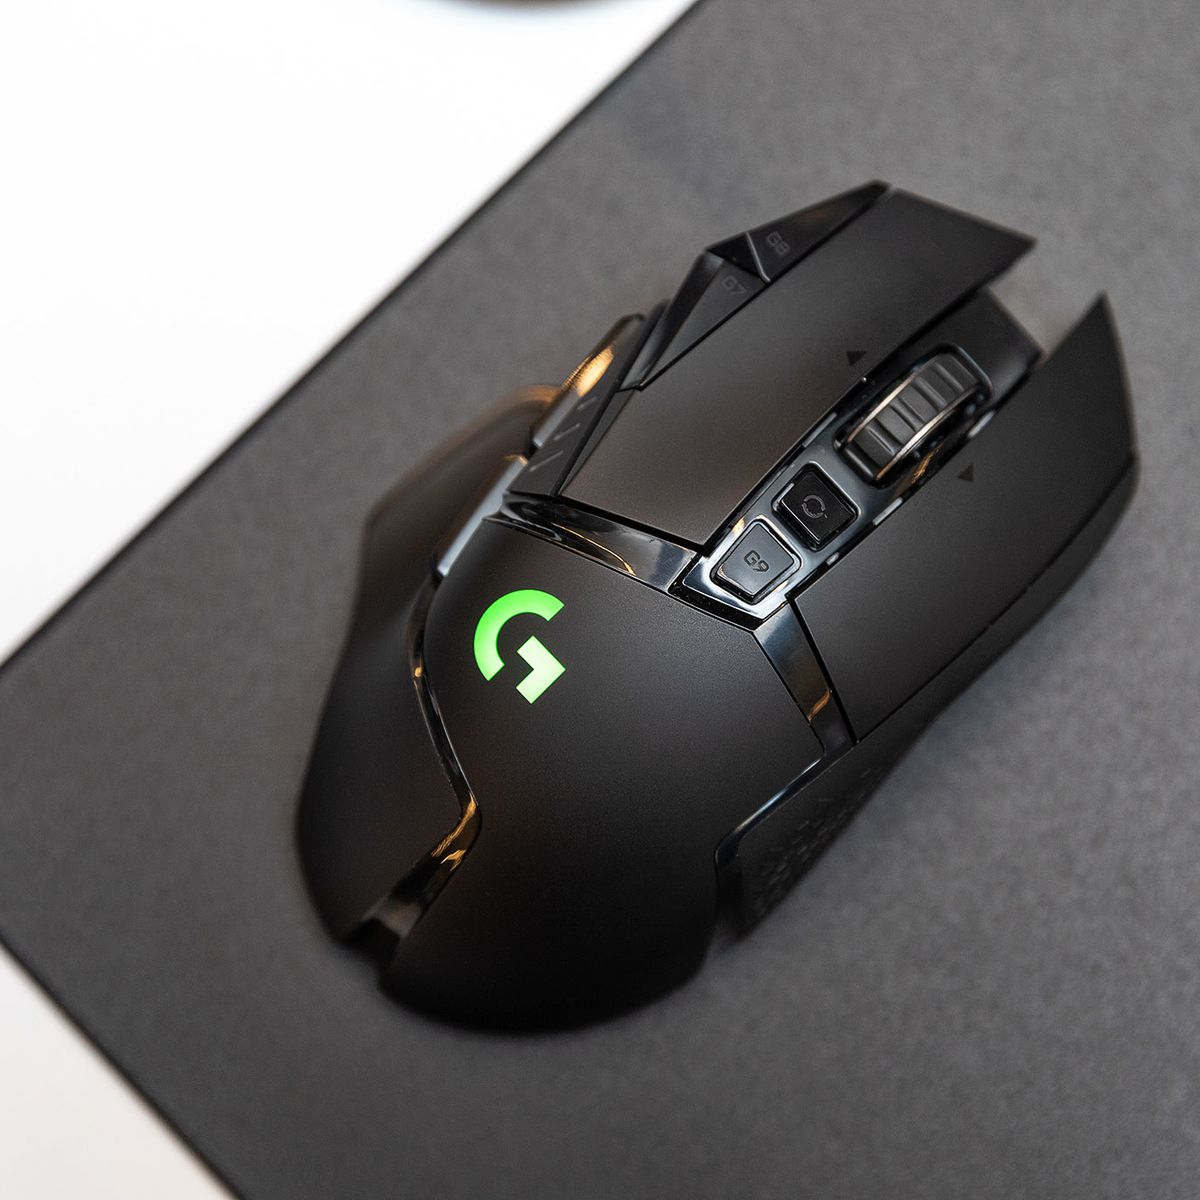 Mouse gaming terbaik: Logitech G502 Lightspeed